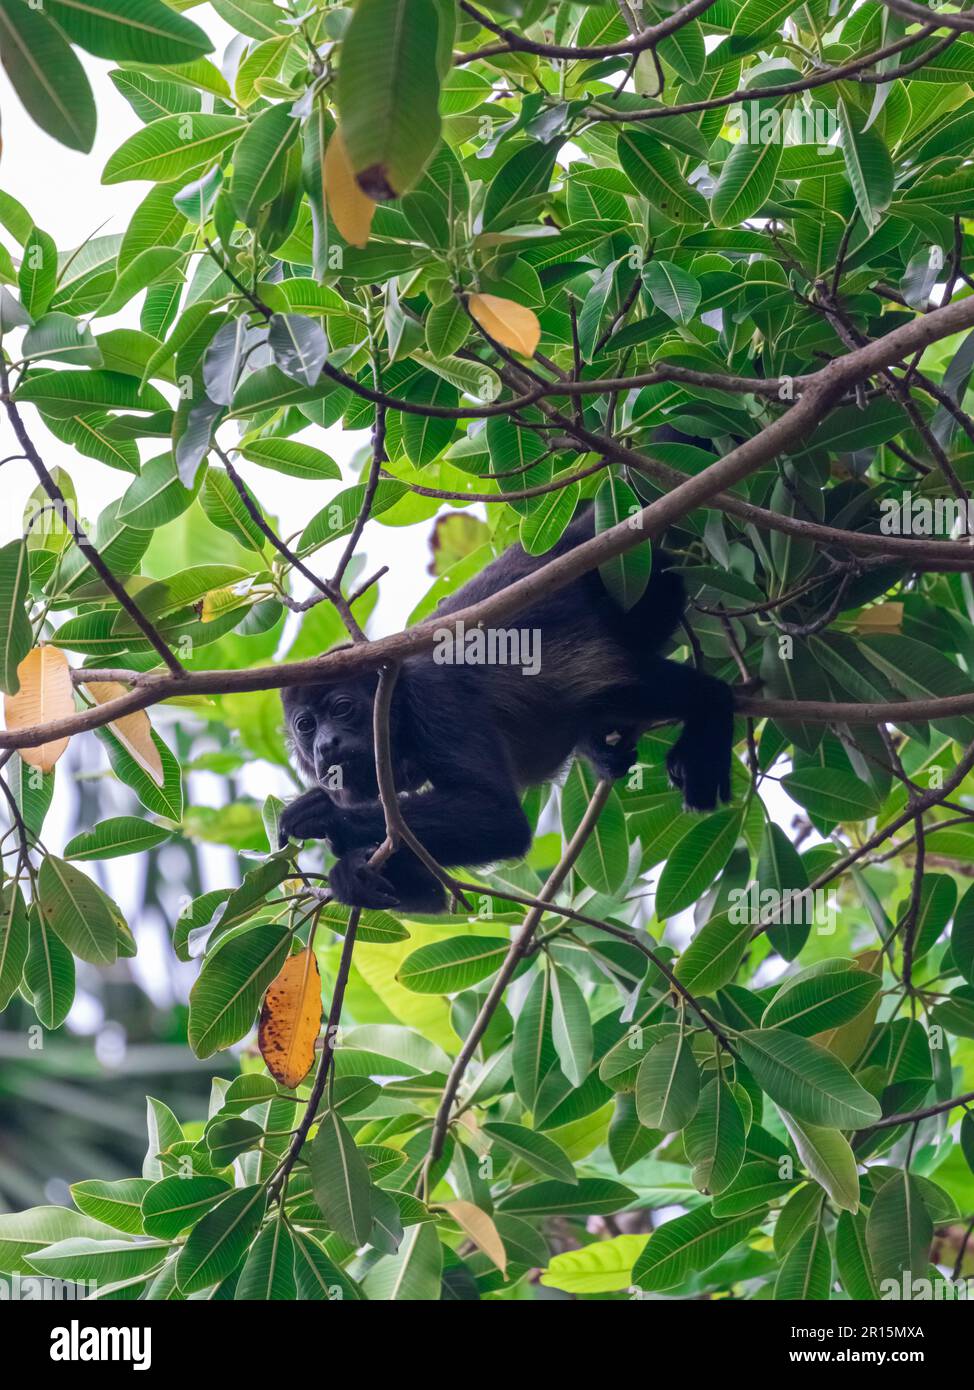 Scimmia urlatrice che riposa nei rami, mangiando i semi. Foto Stock